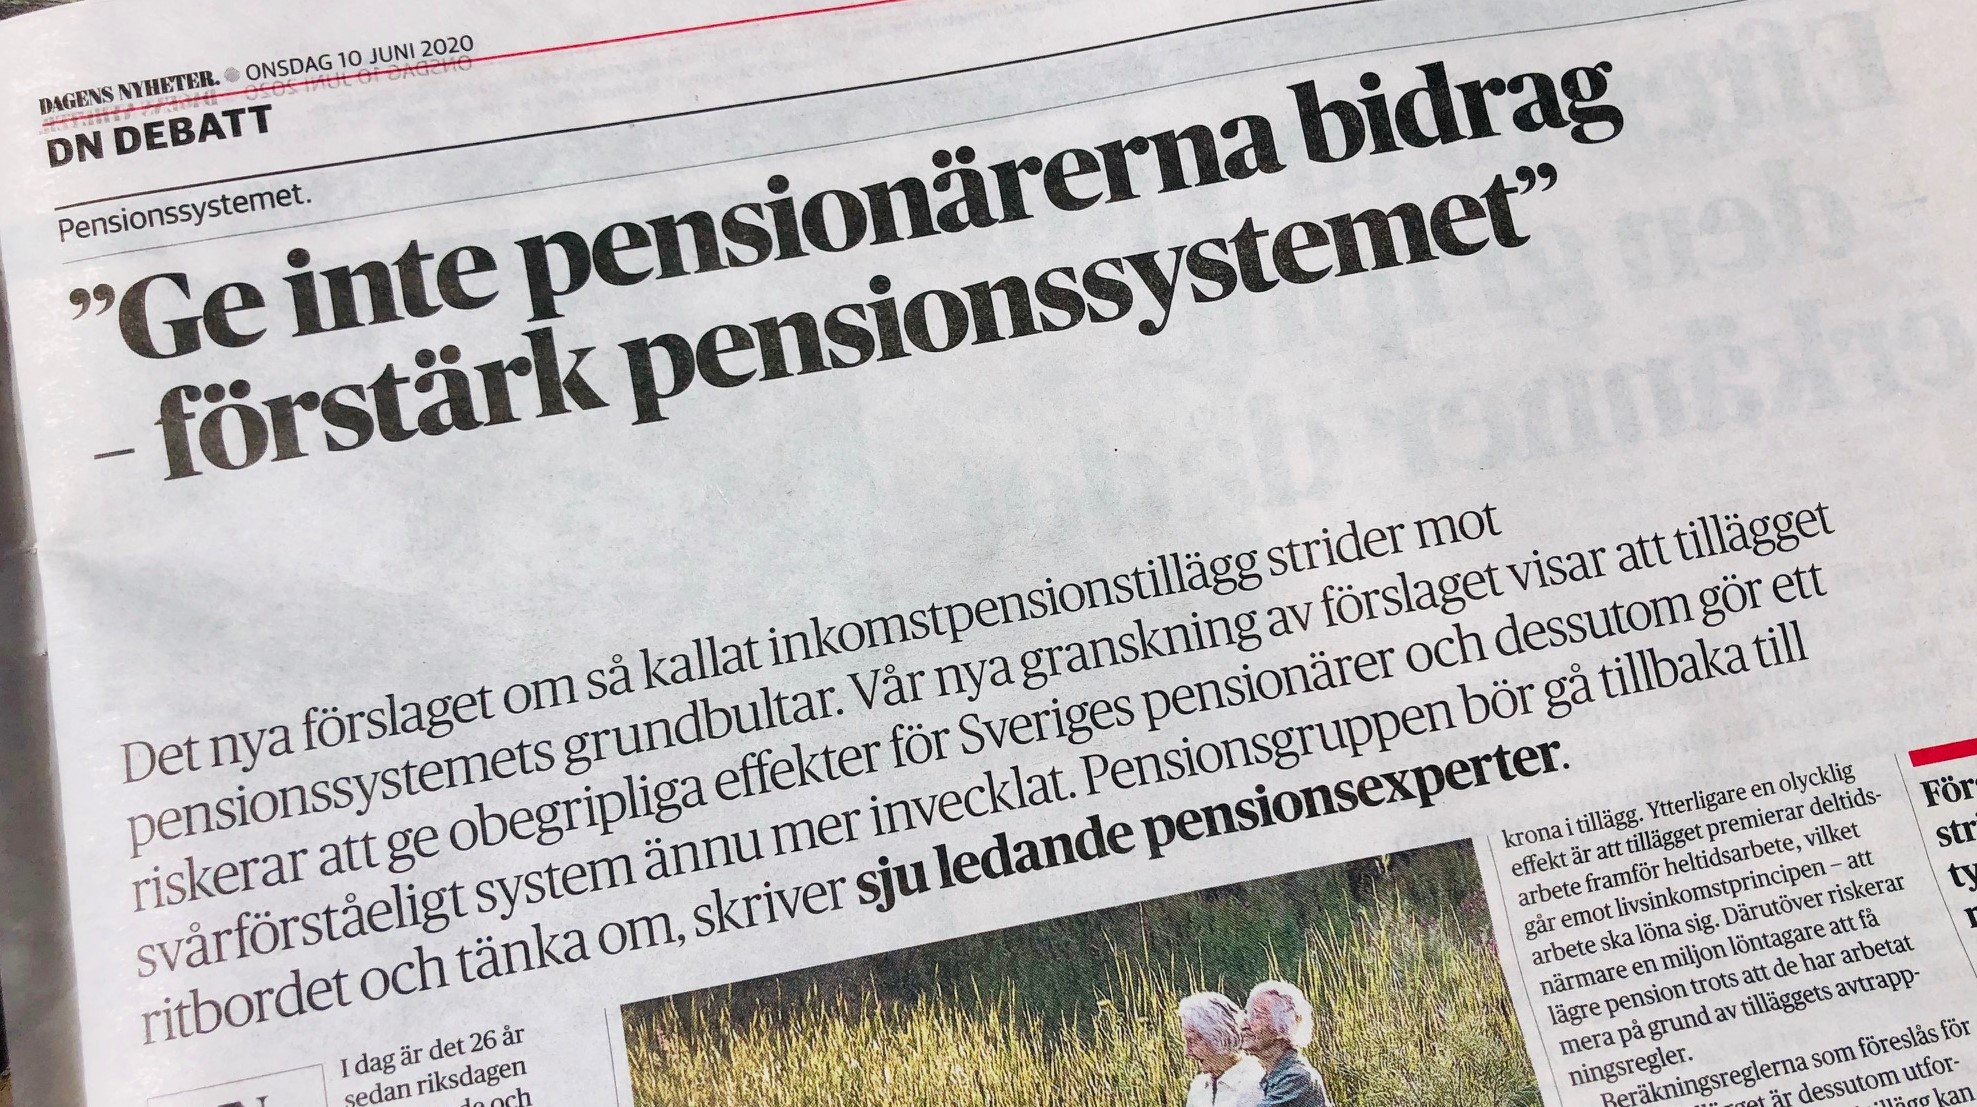 Förslaget om ett inkomstpensionstillägg måste dras tillbaka, skriver jag och sex andra pensionsexperter på DN Debatt idag.